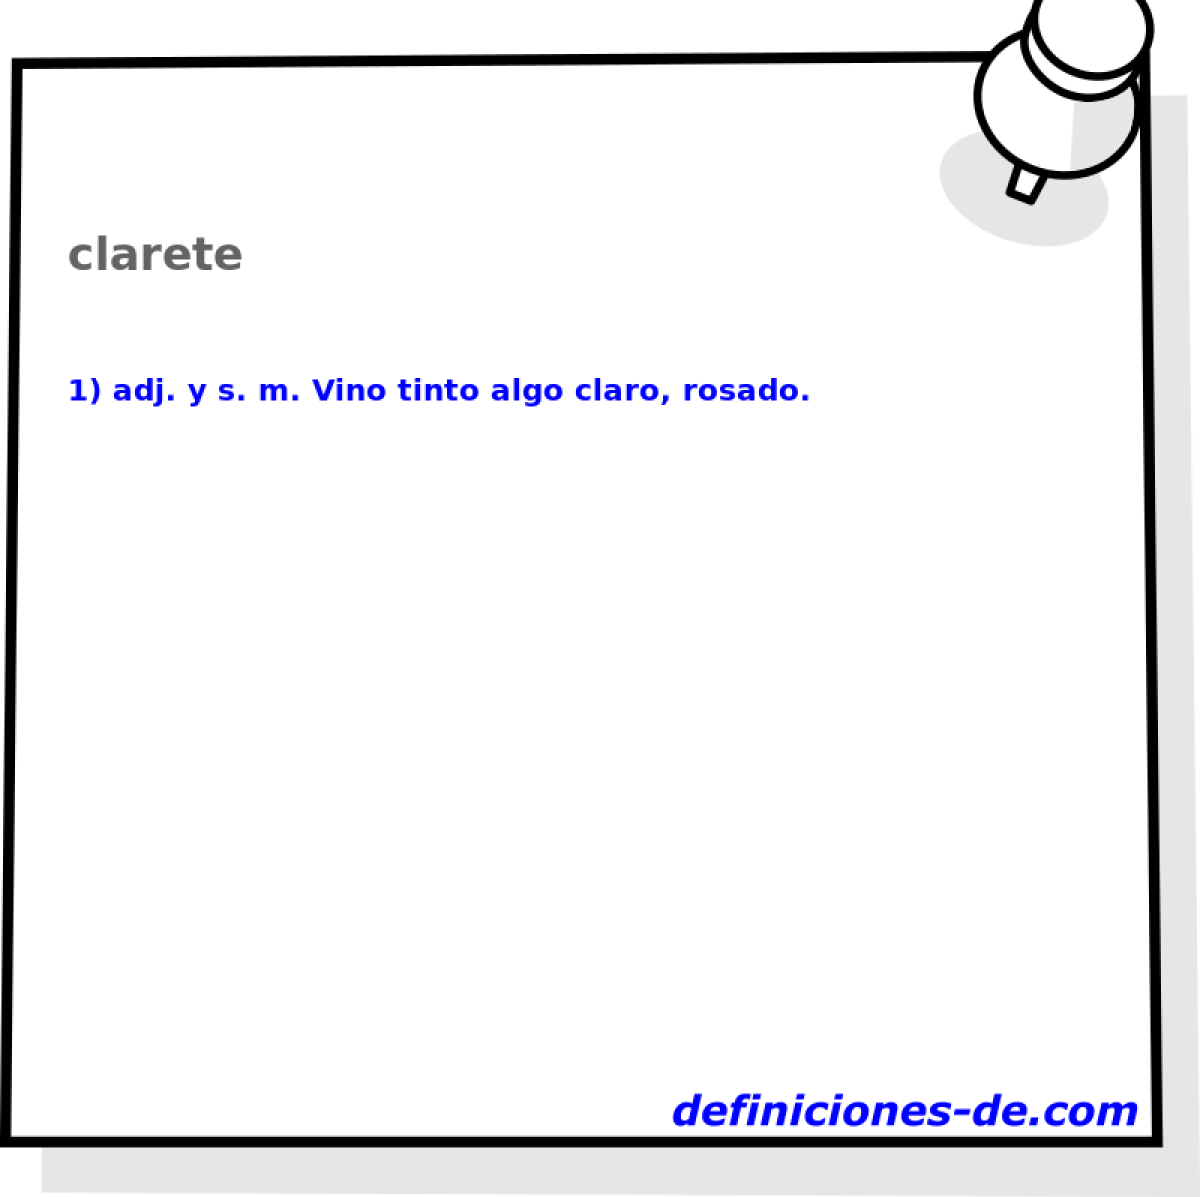 clarete 